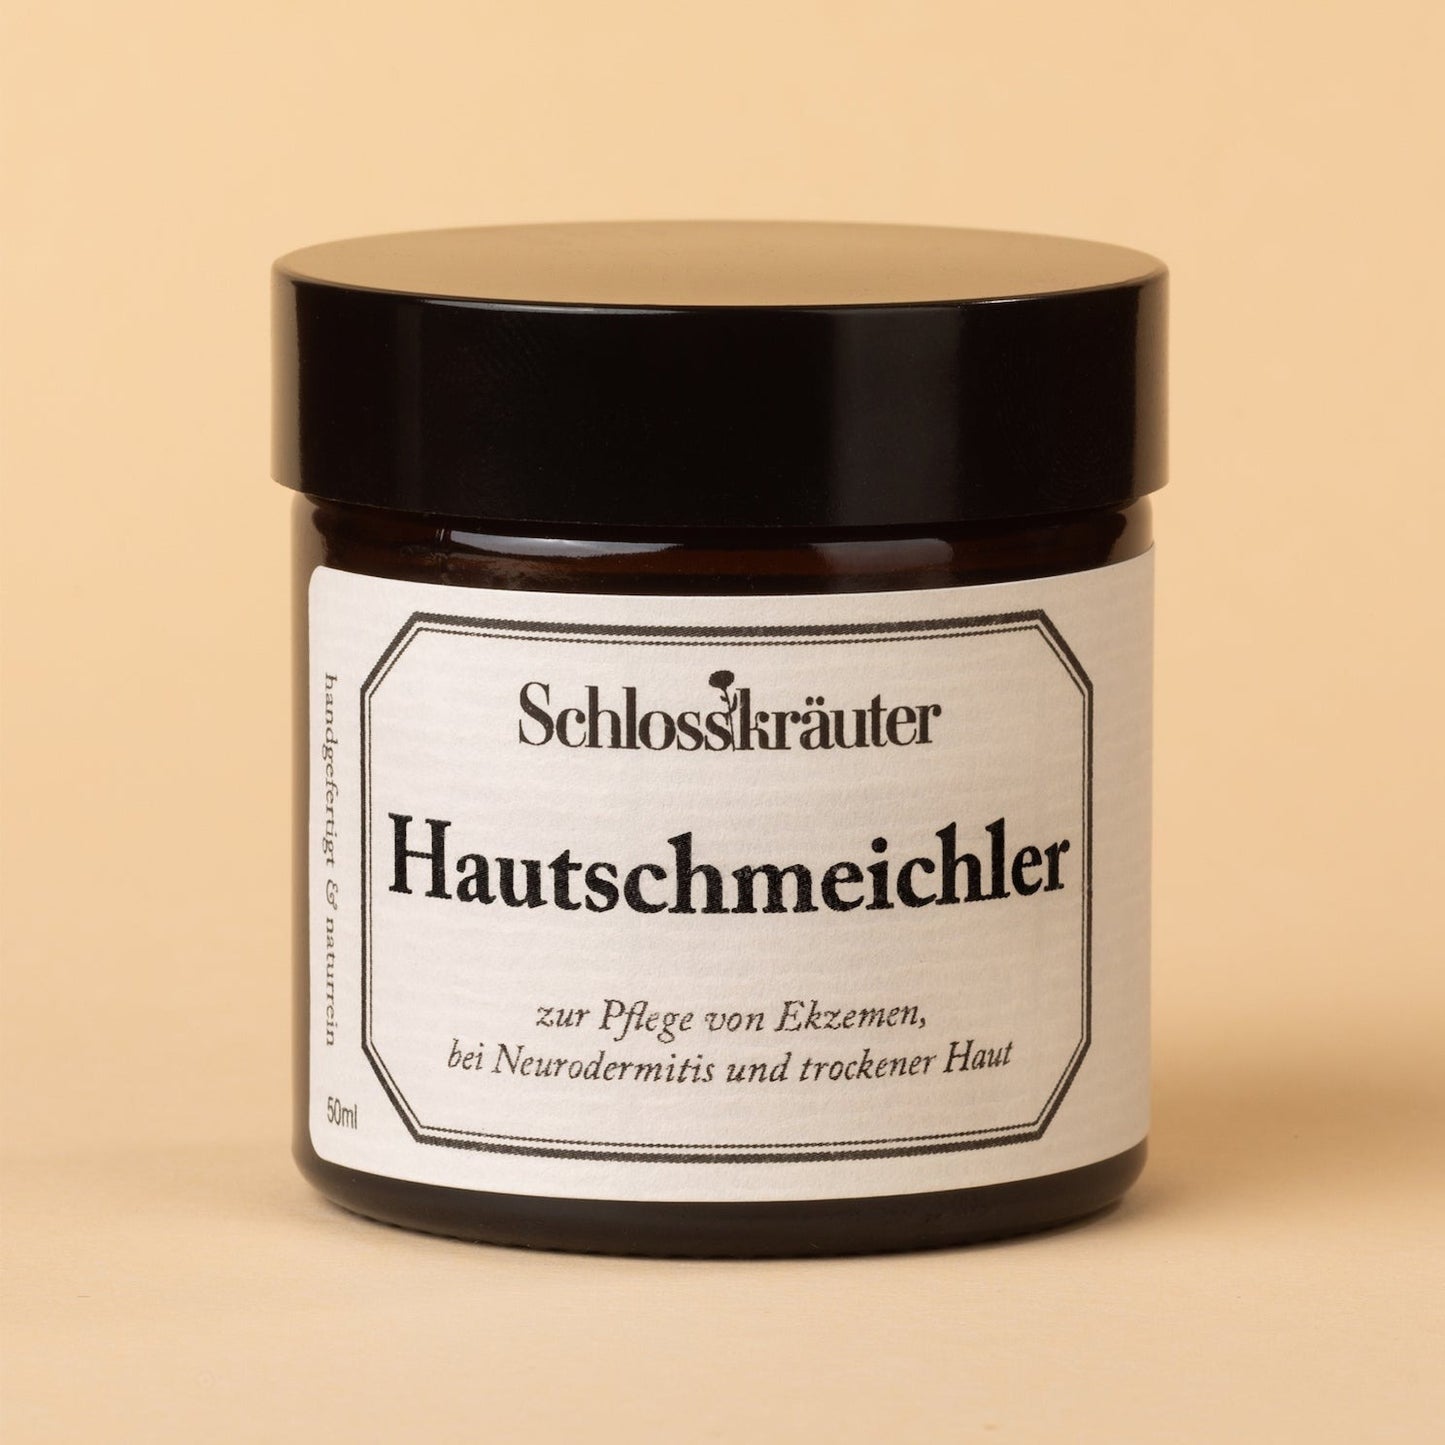 Hautschmeichler